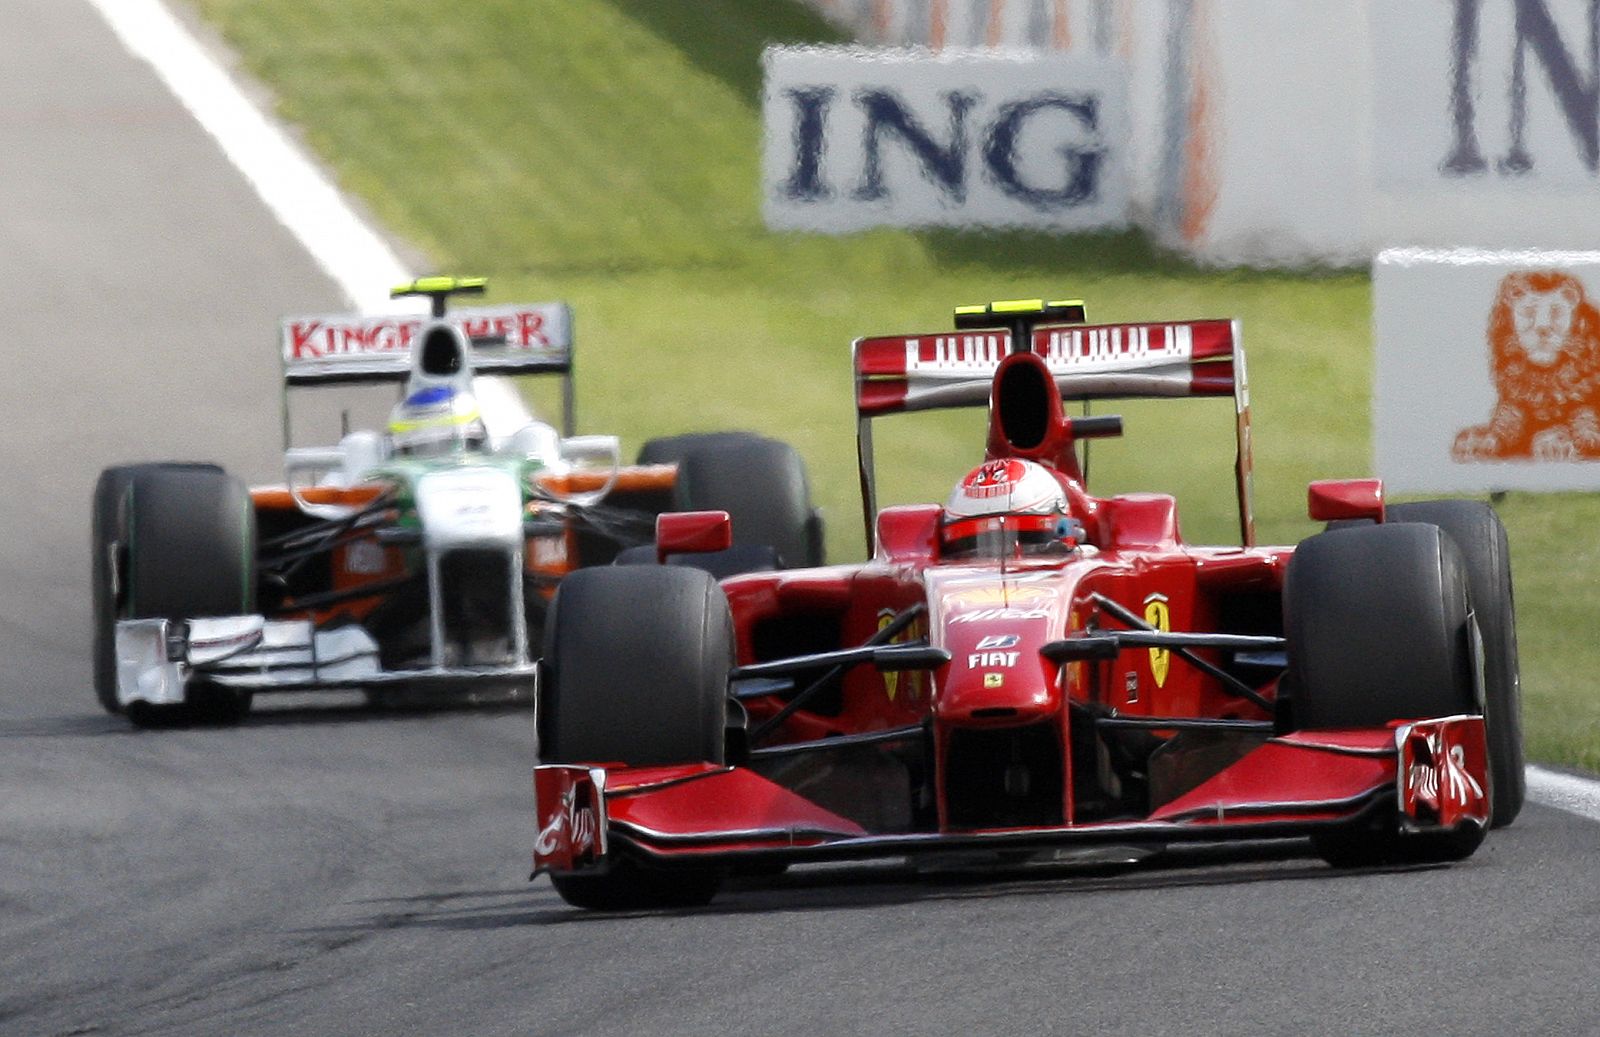 El piloto finlandés de Ferrari Kimi Raikkonen ha ganado el GP de Bélgica, siendo segundo el italiano de Force India Giancarlo Fisichella.